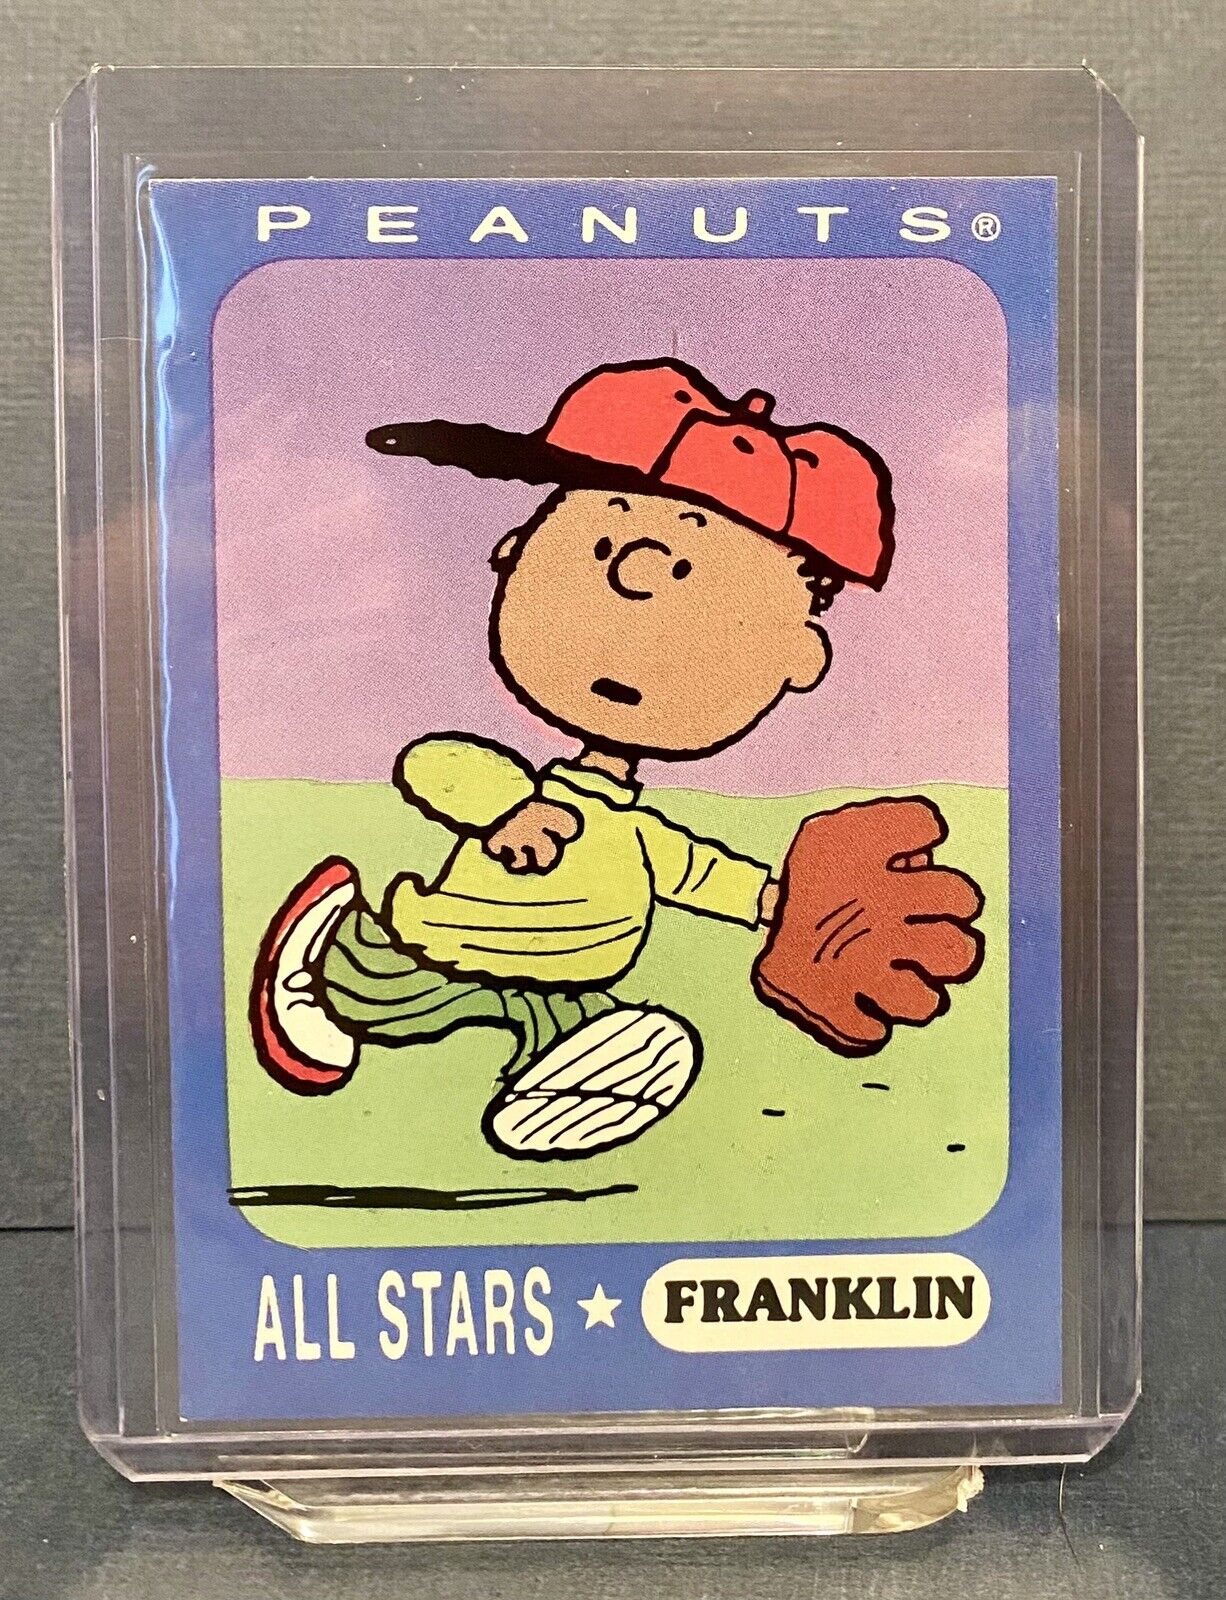 Peanuts All Stars Franklin Trading Card / Ziploc